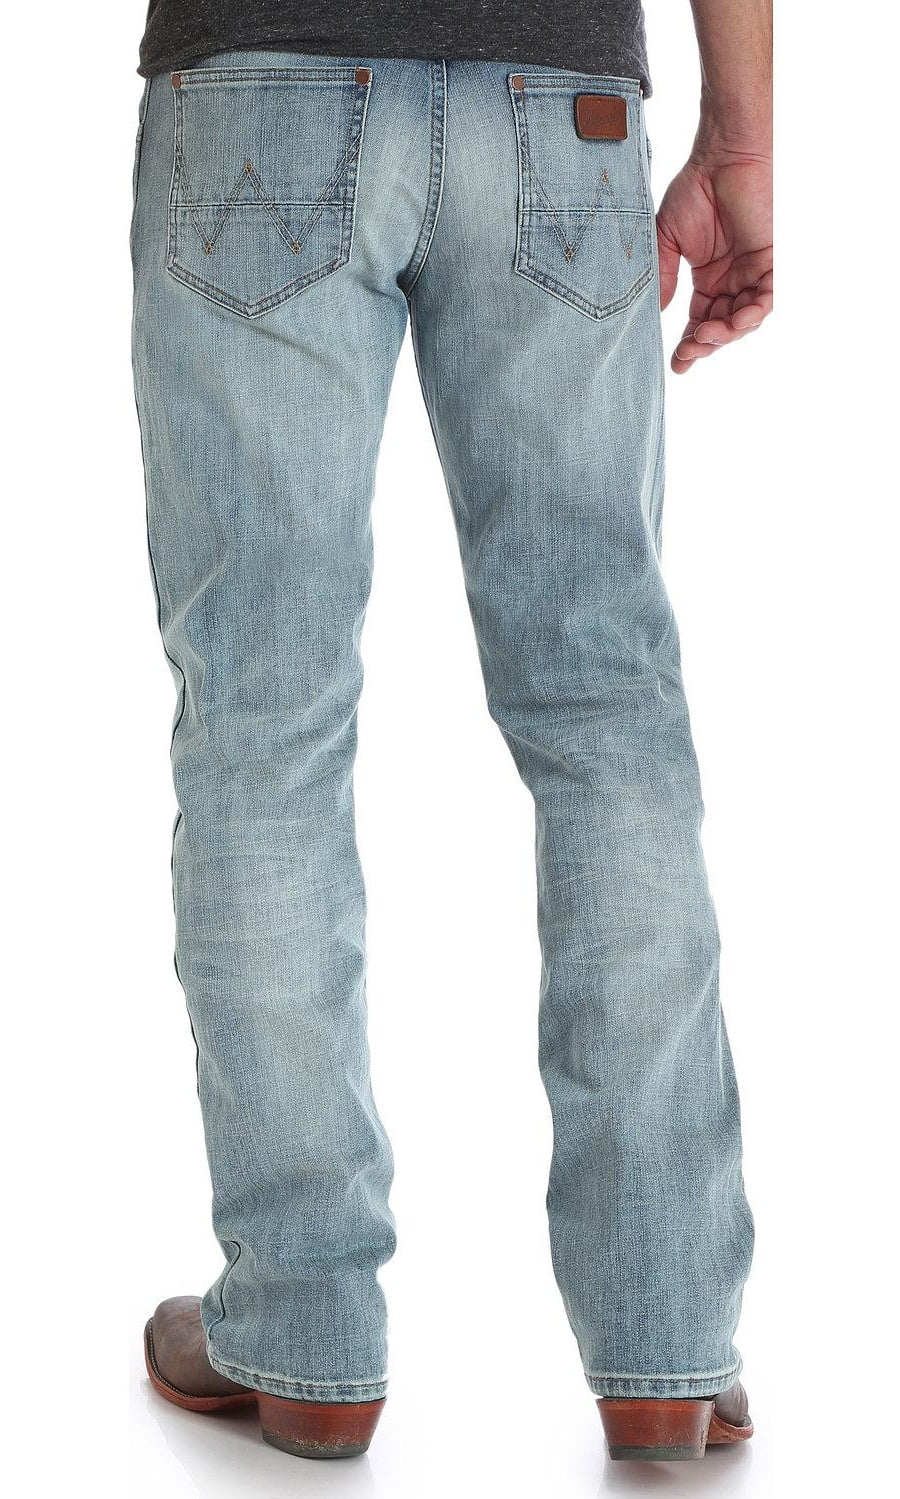 34x36 skinny jeans